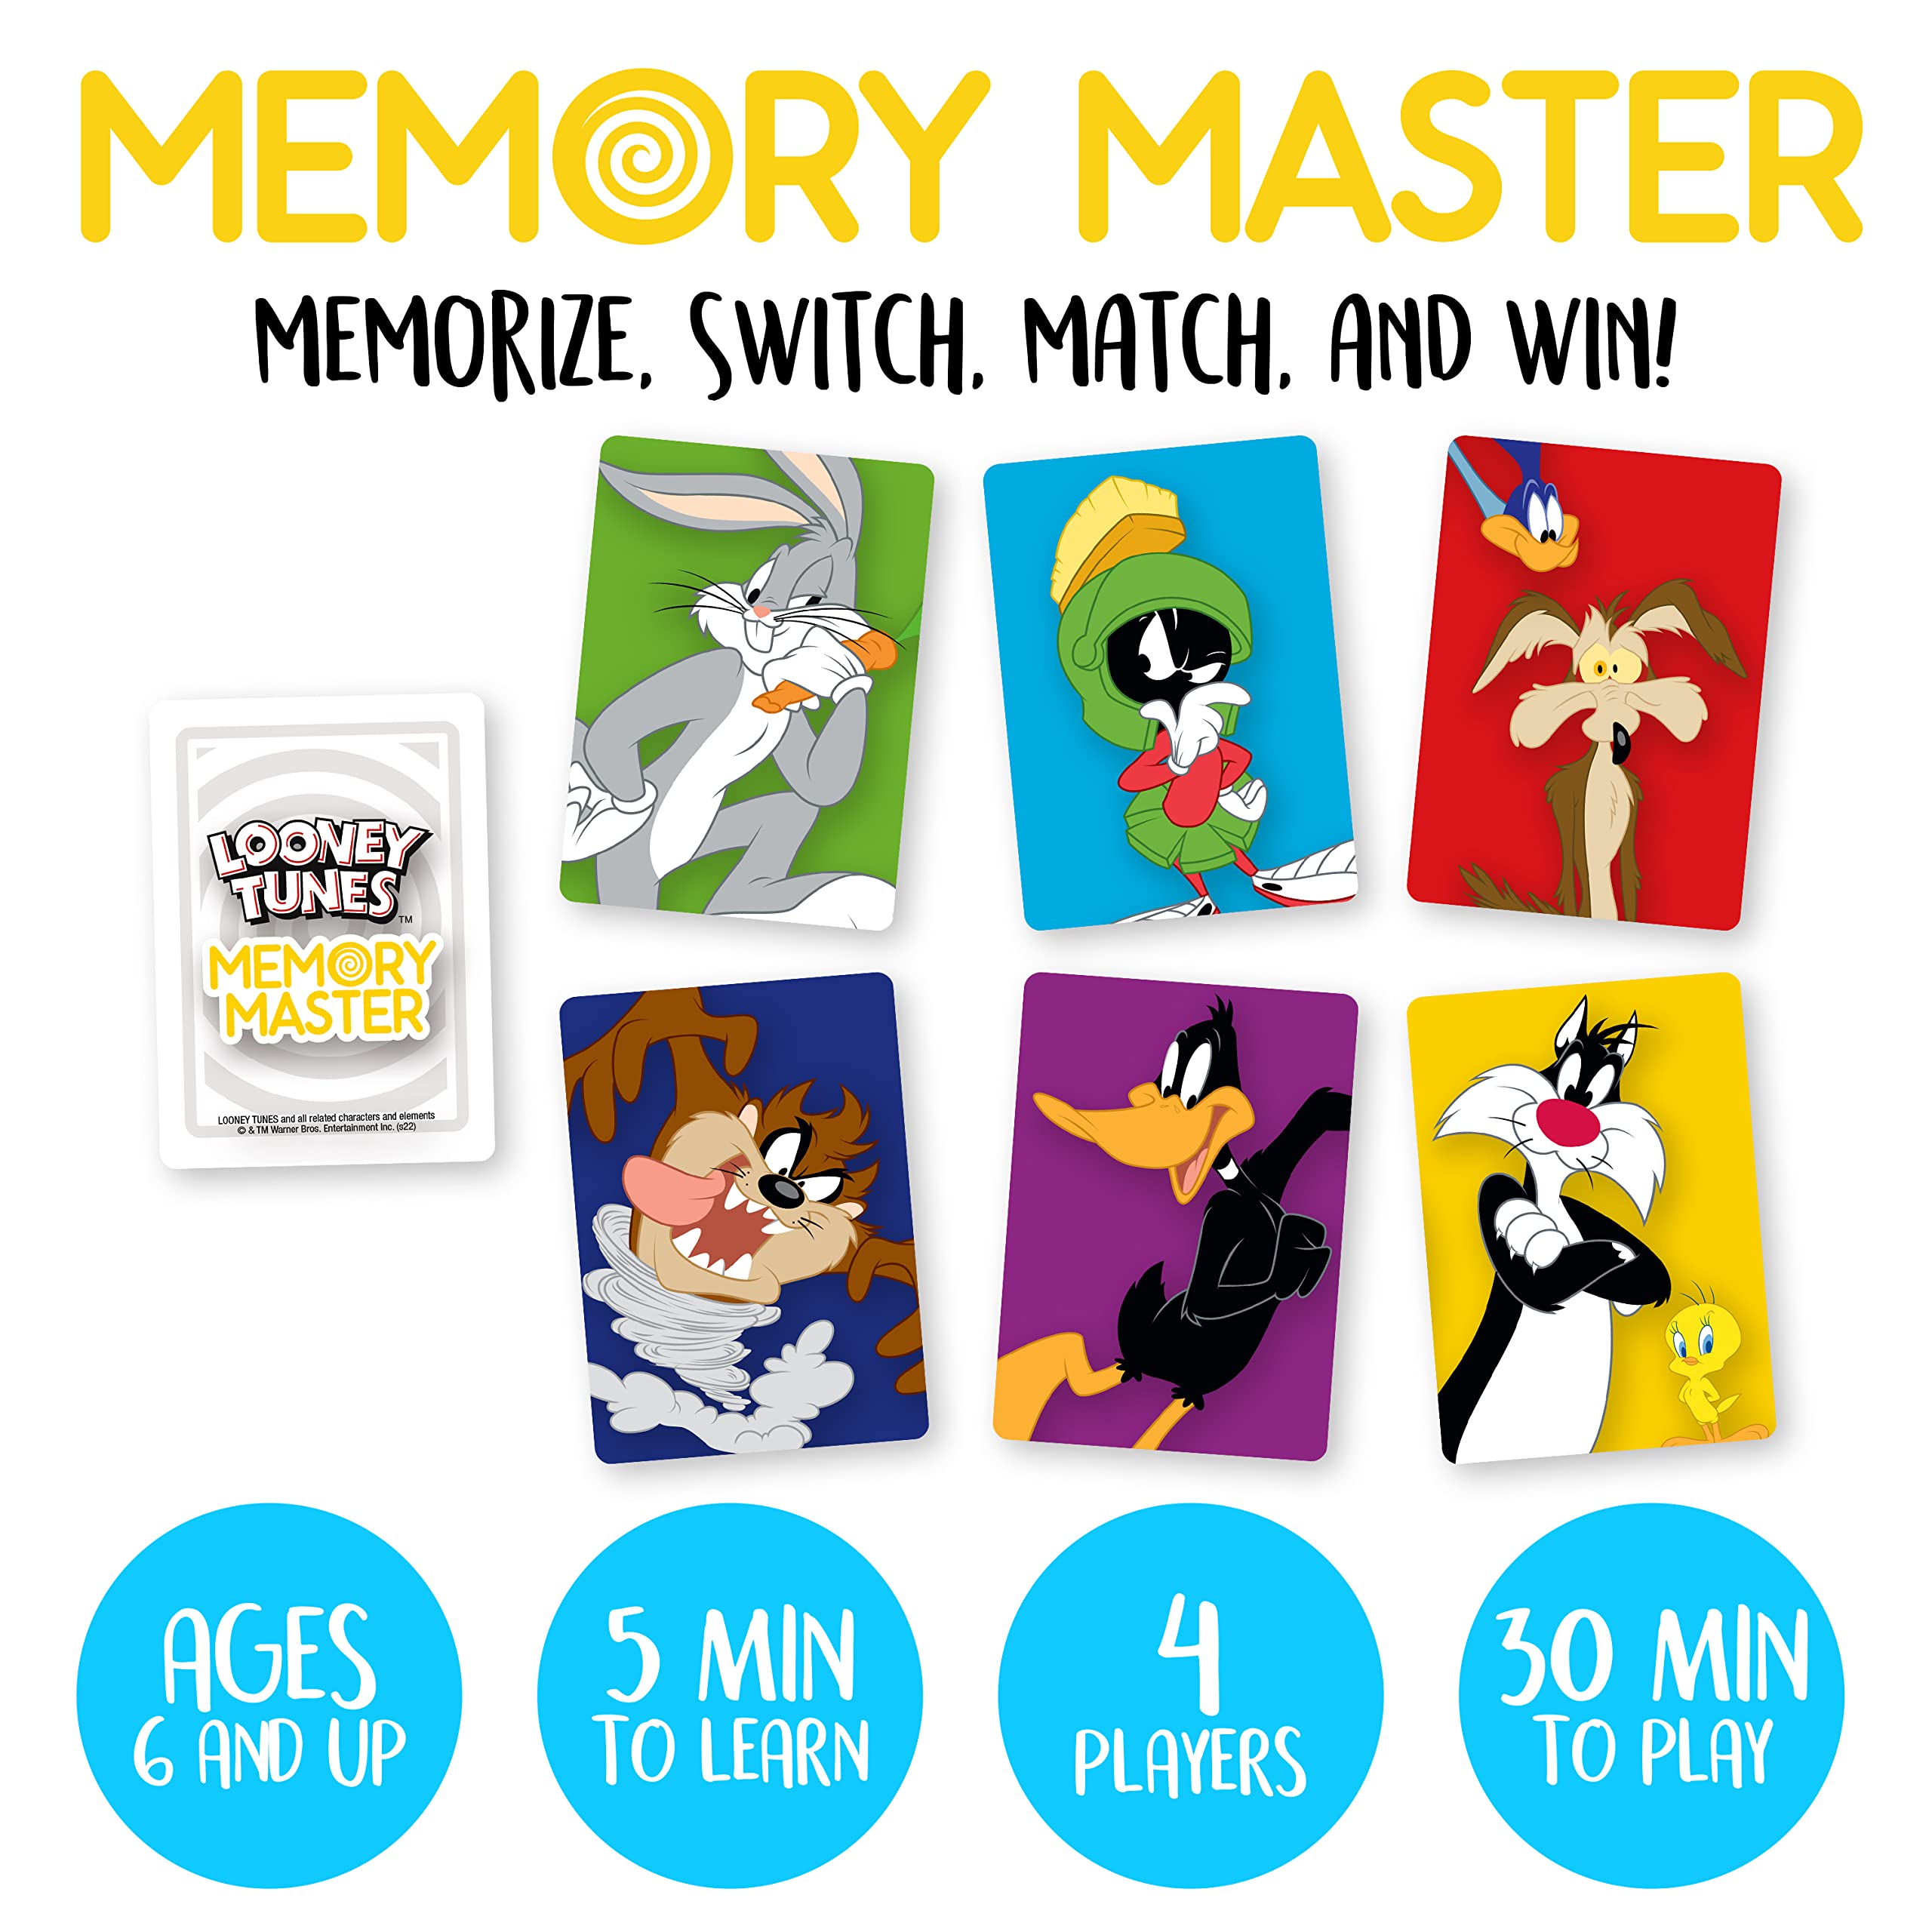 AQUARIUS - Looney Tunes Memory Master Card Game